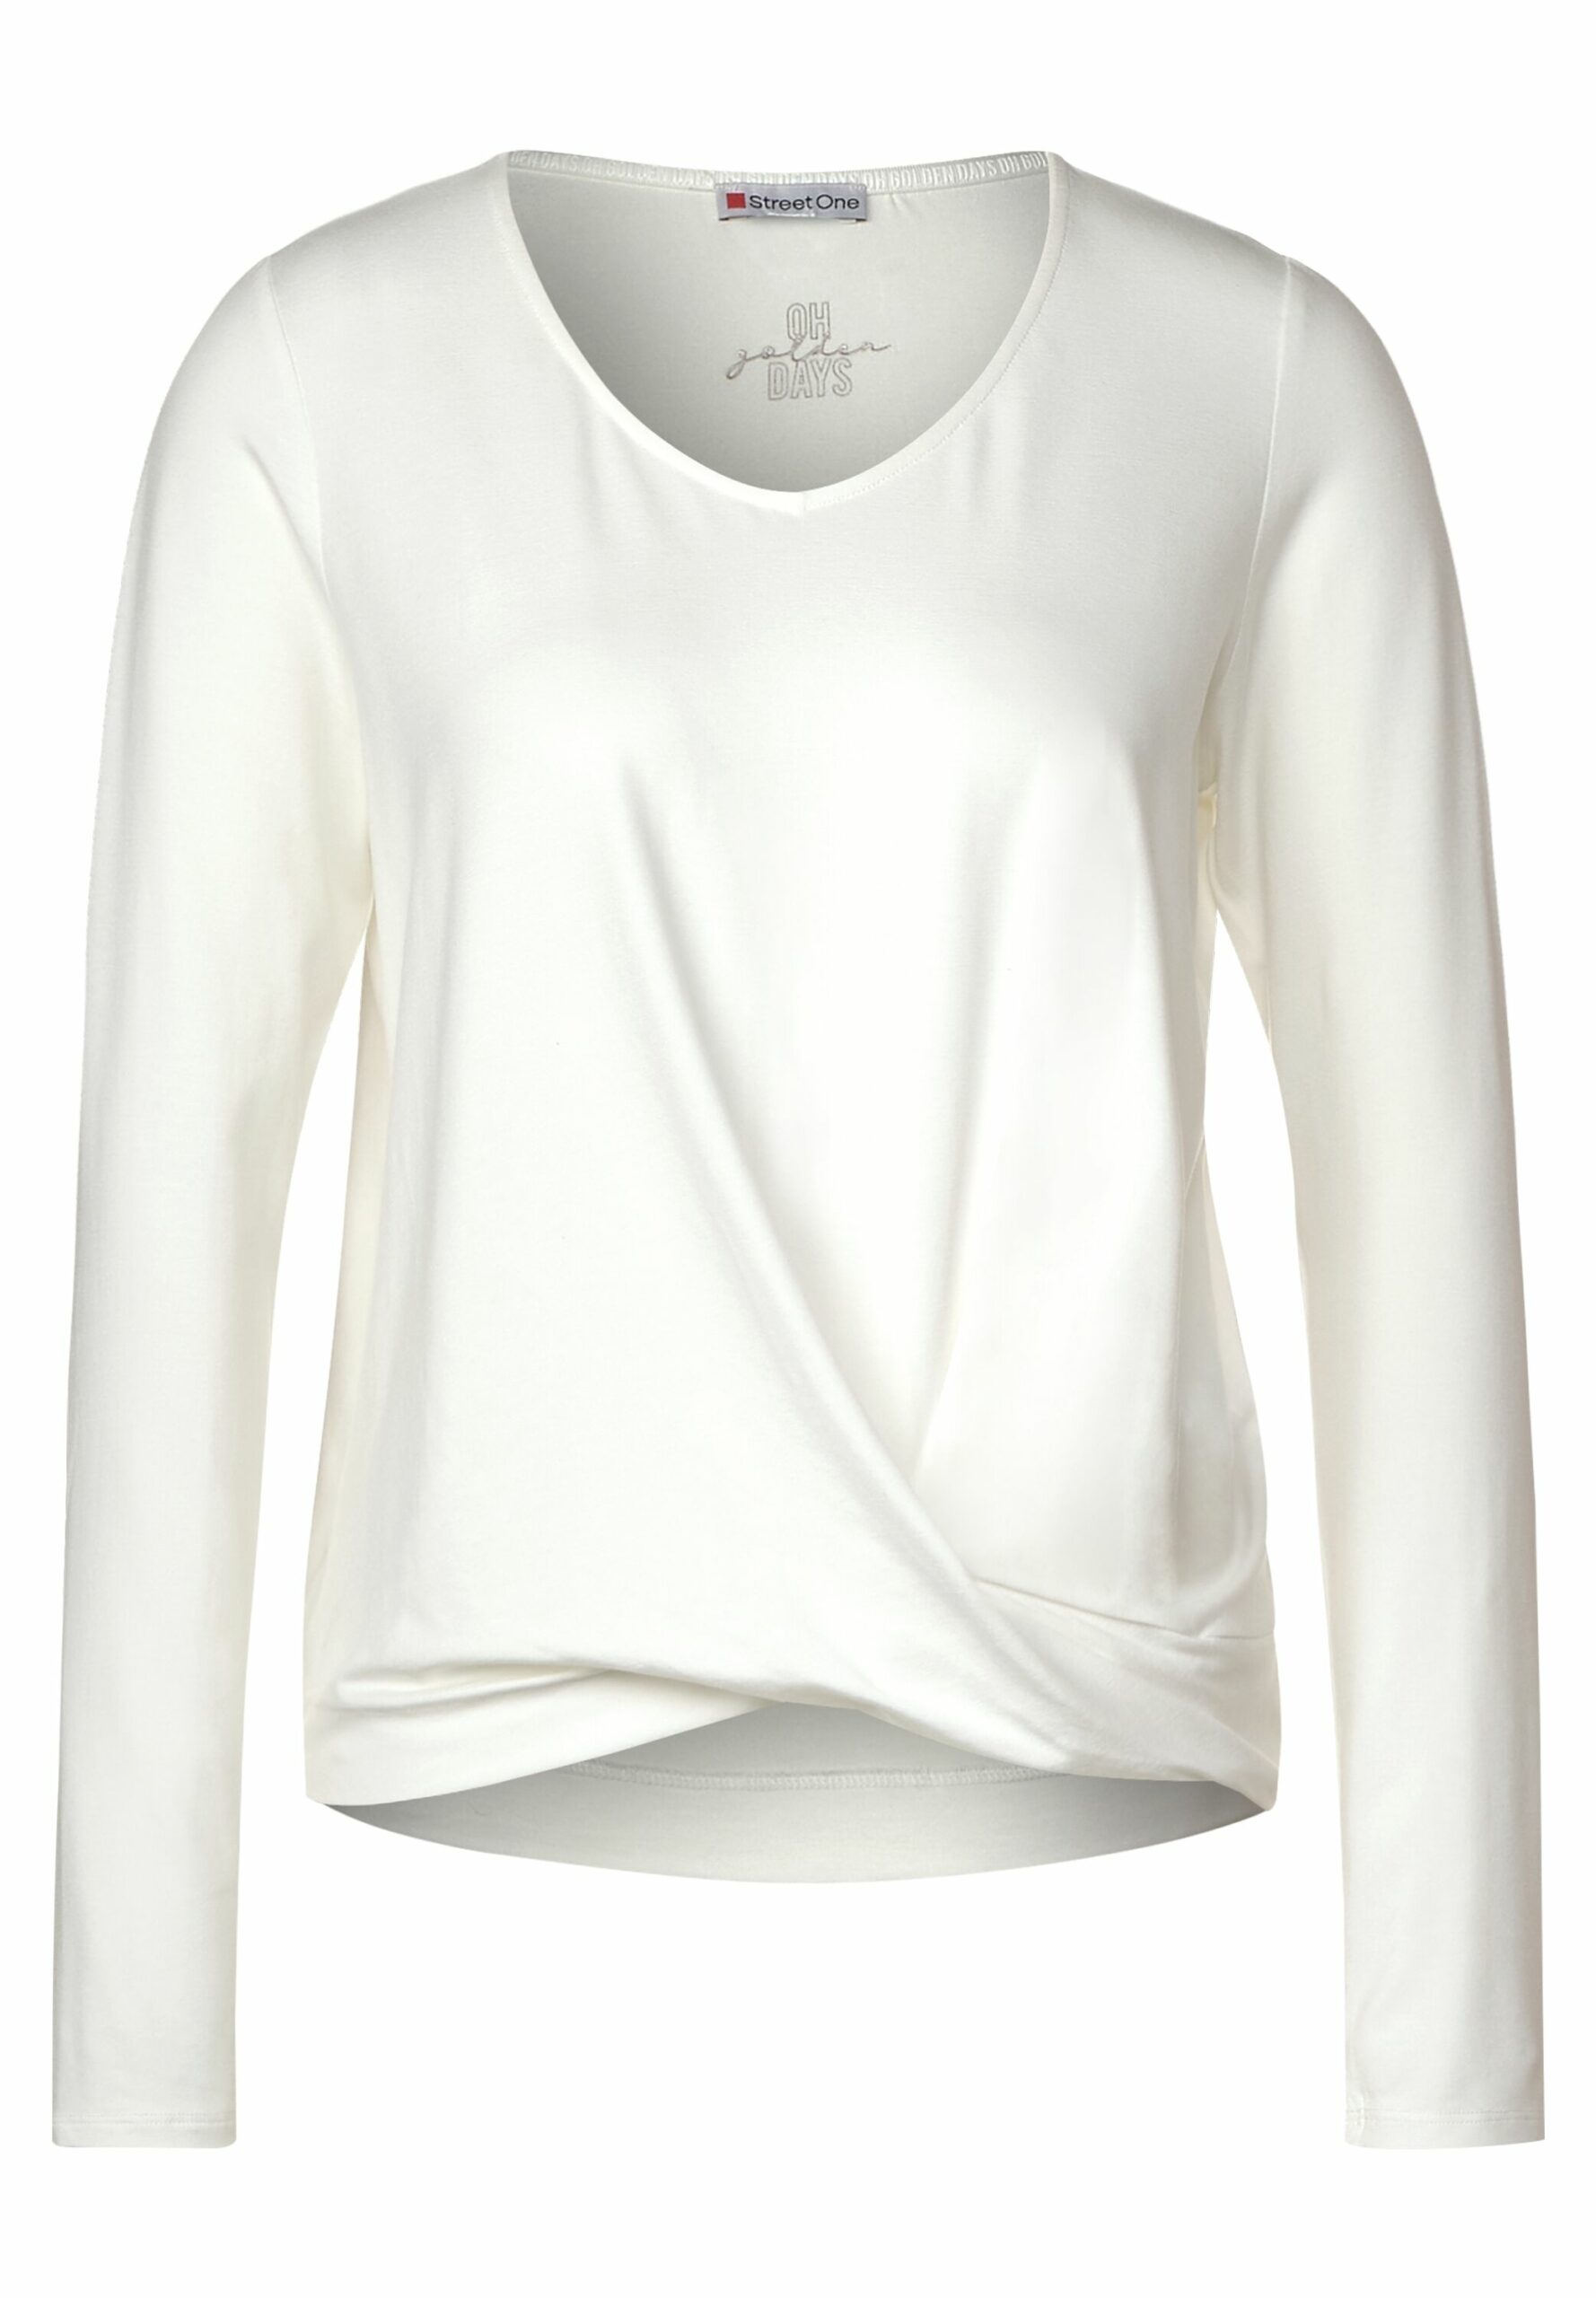 Onlineshop Shirt & One - mit Fashion Schmidt - Lifestyle Street Knotendetail